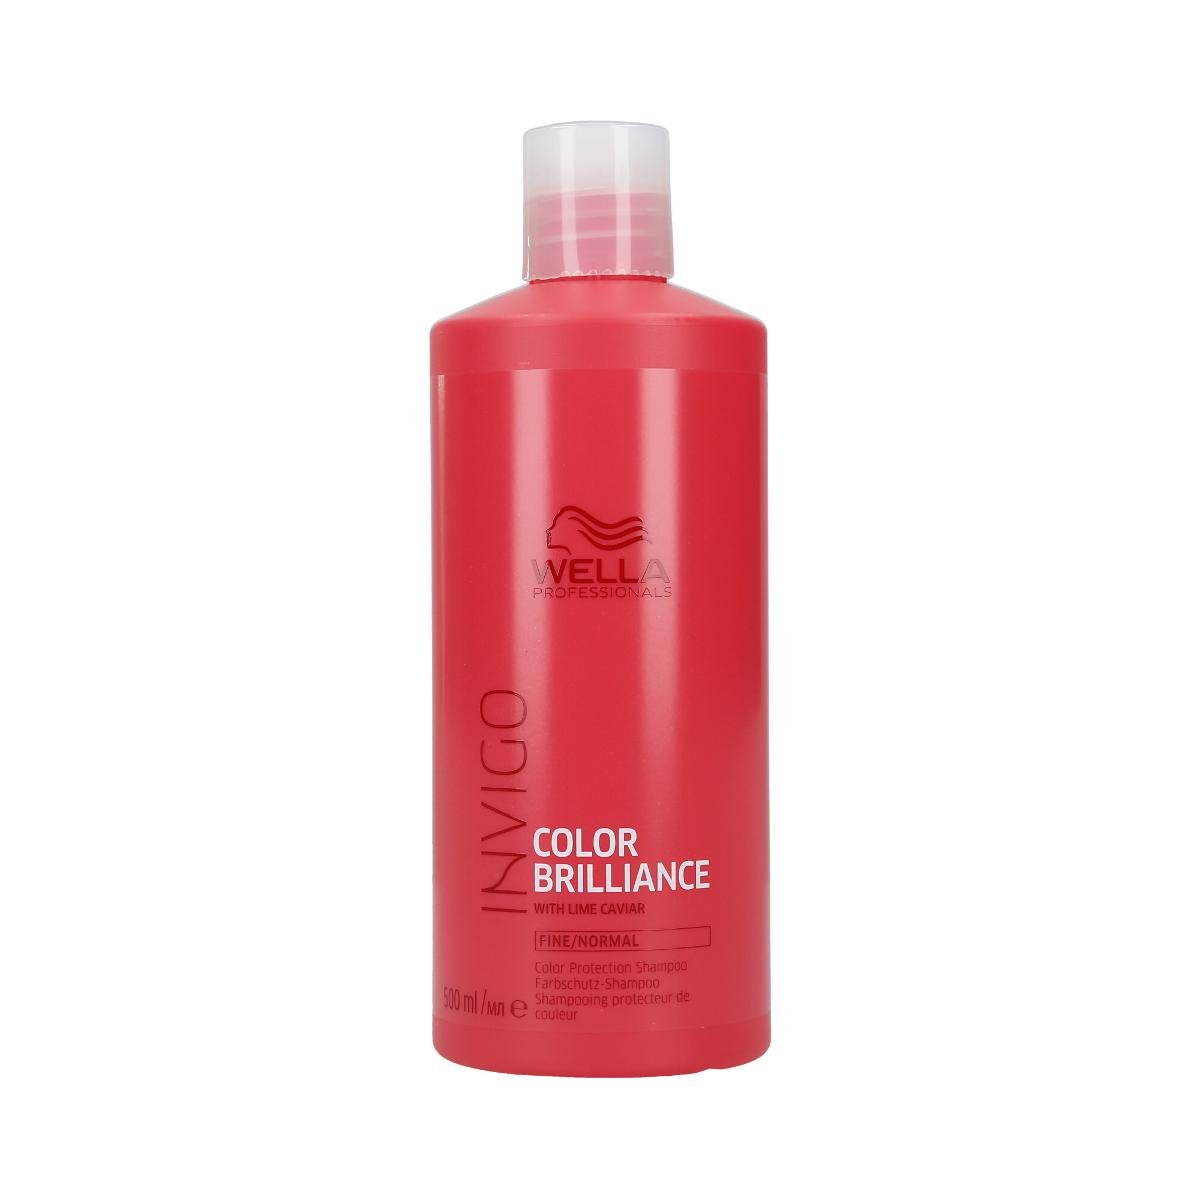 Wella Szampon Color Brilliance Invigo Professionals do włosów delikatnych do normalnych 500 ml